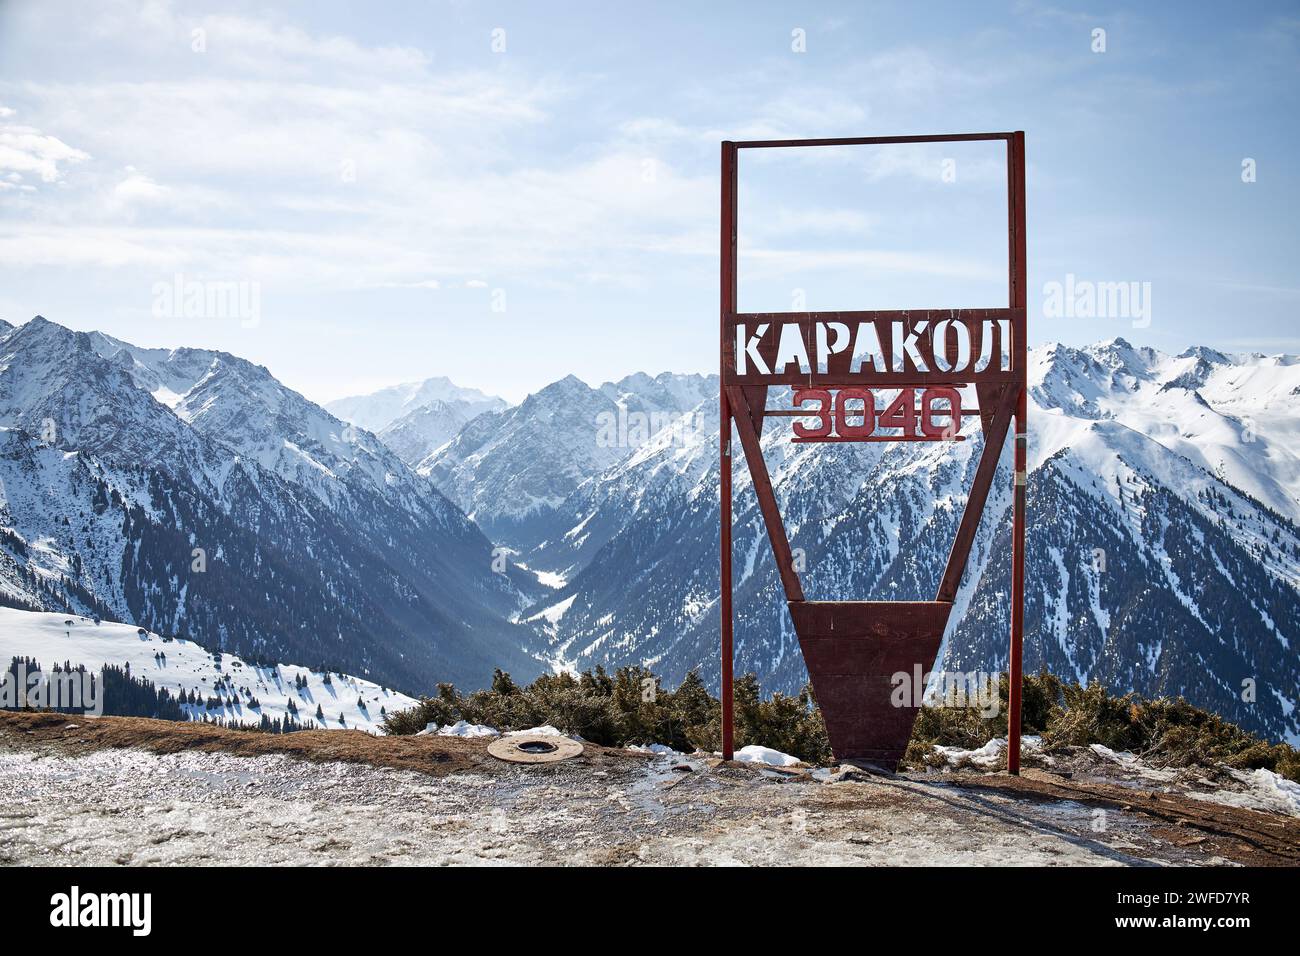 Skigebiet Karakol. Schild auf der Spitze des Berges 3040 Meter über dem Meeresspiegel. Panoramablick auf die Winterberge in Kirgisistan. Schneebedeckte Gipfel, nat Stockfoto